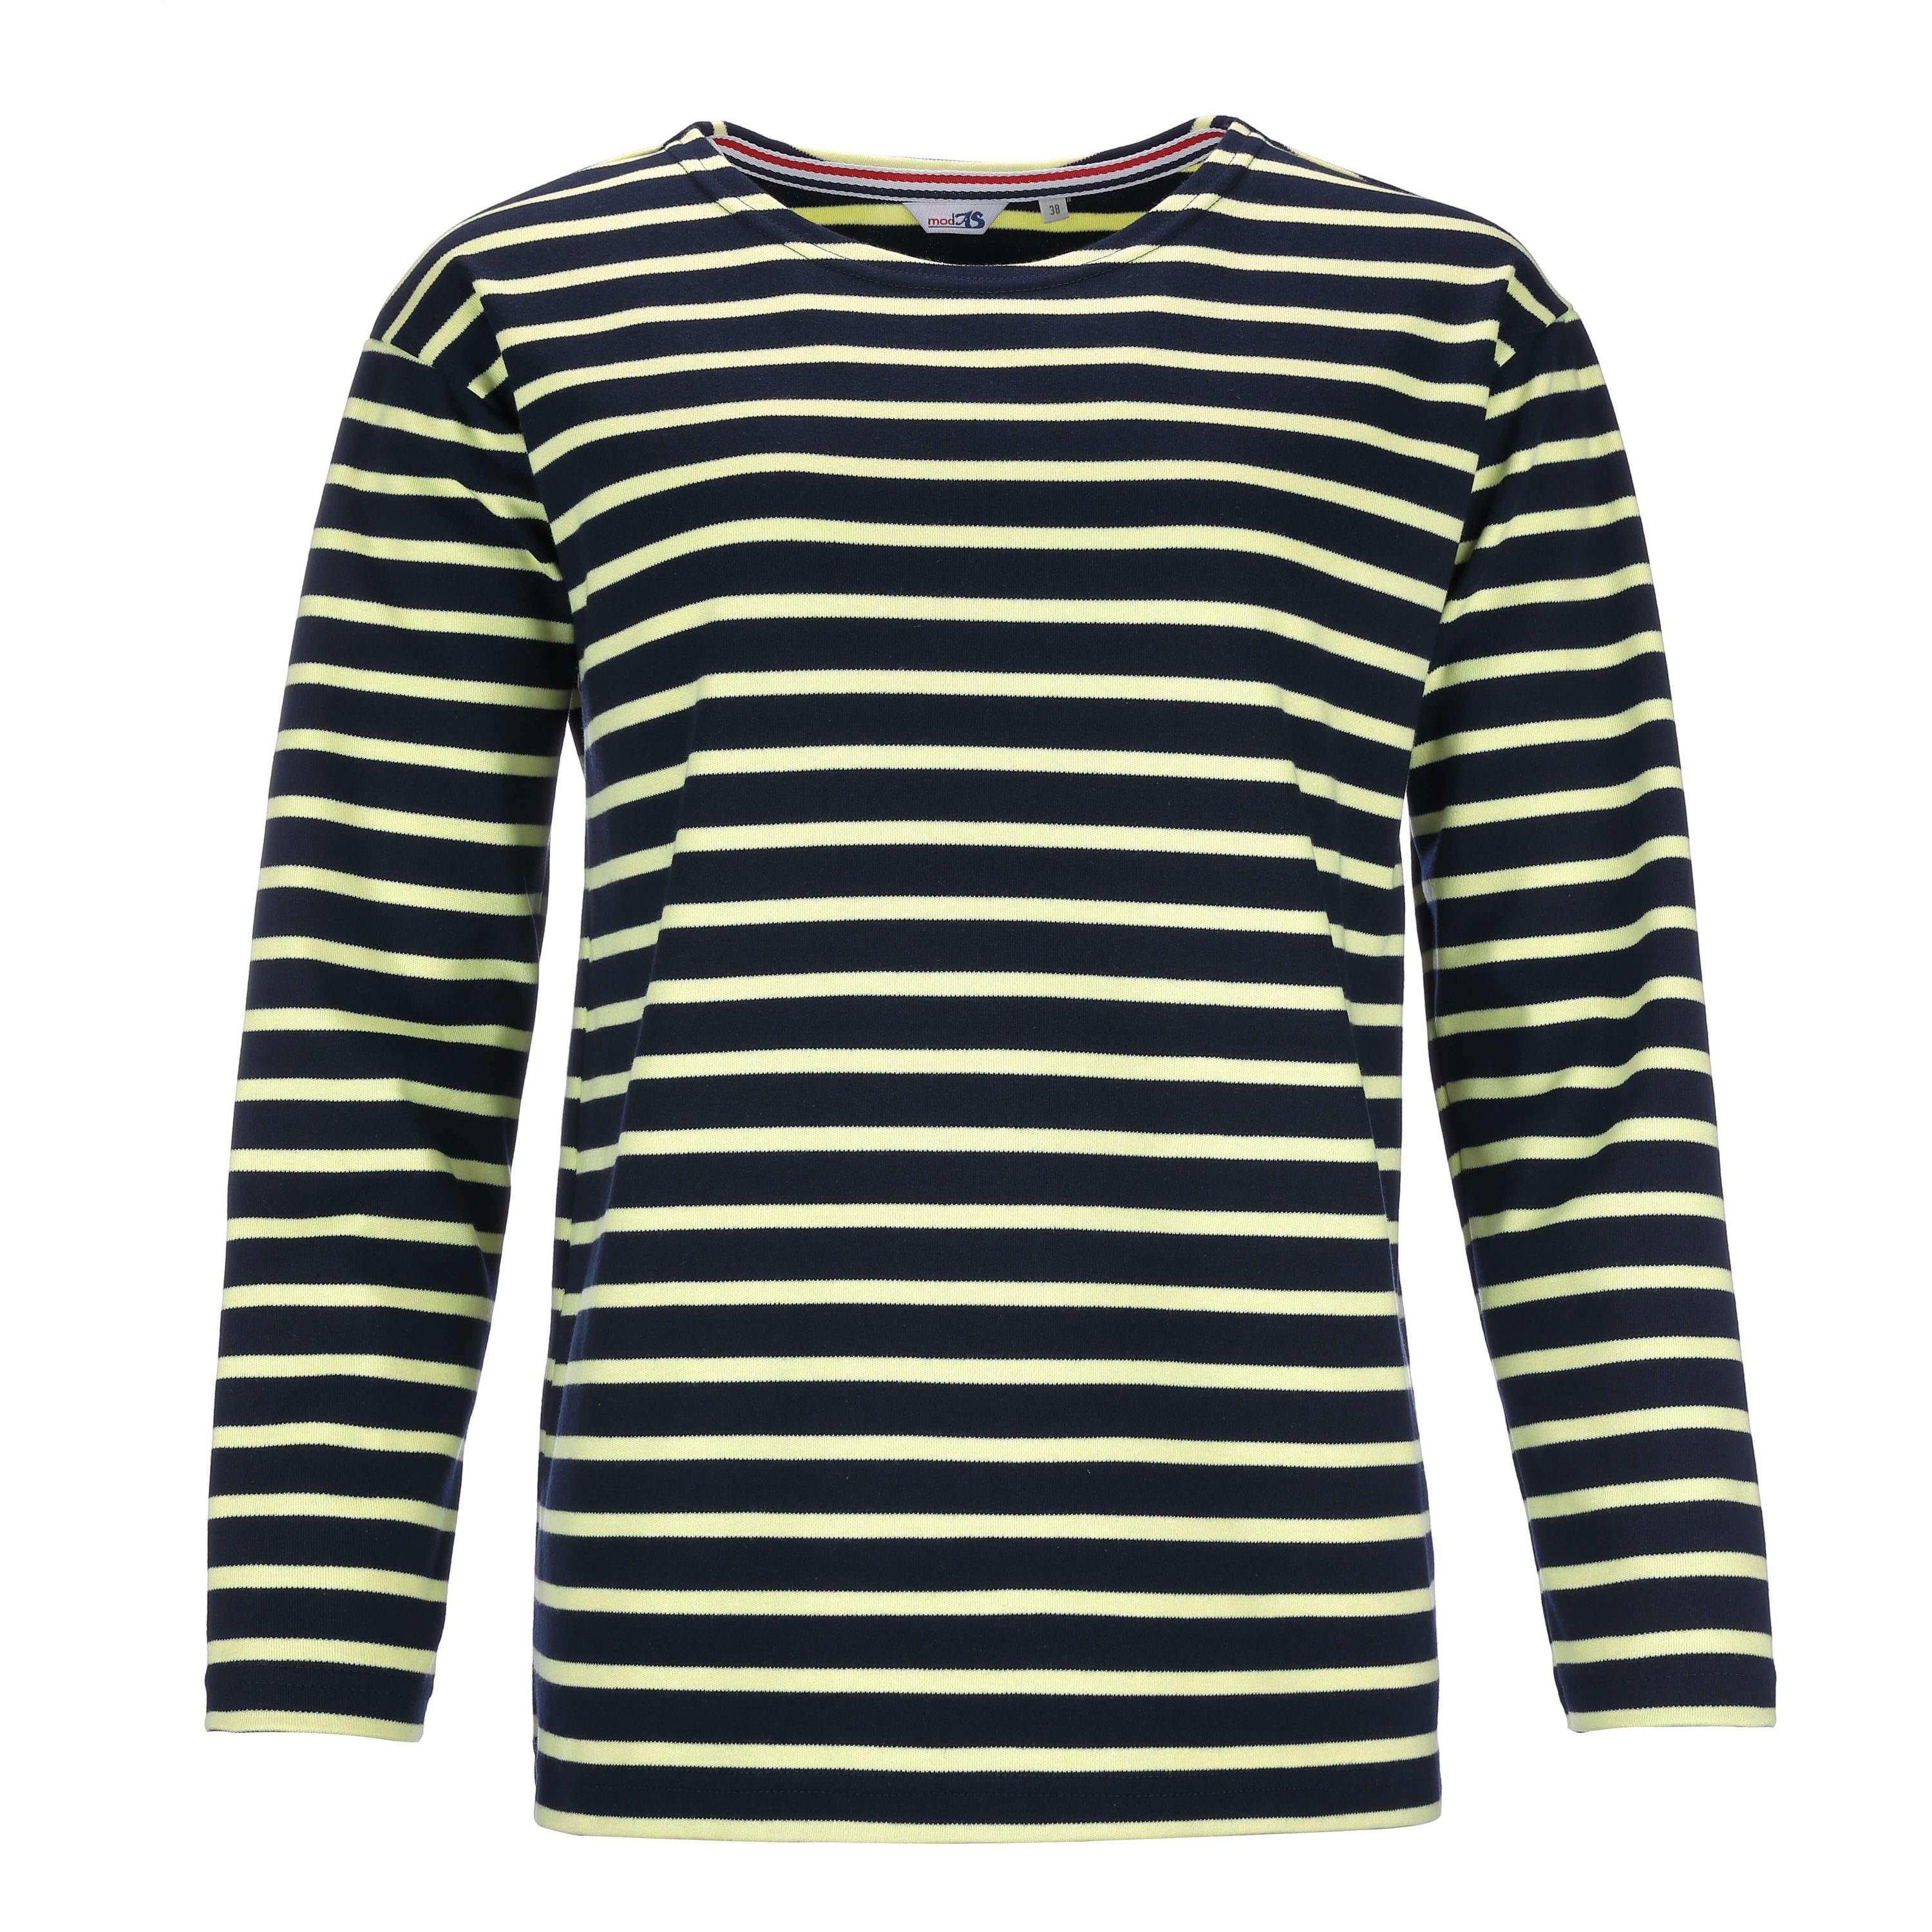 modAS Langarmshirt Damen Bretonisches Basic Shirt mit Streifen - Streifenshirt Baumwolle